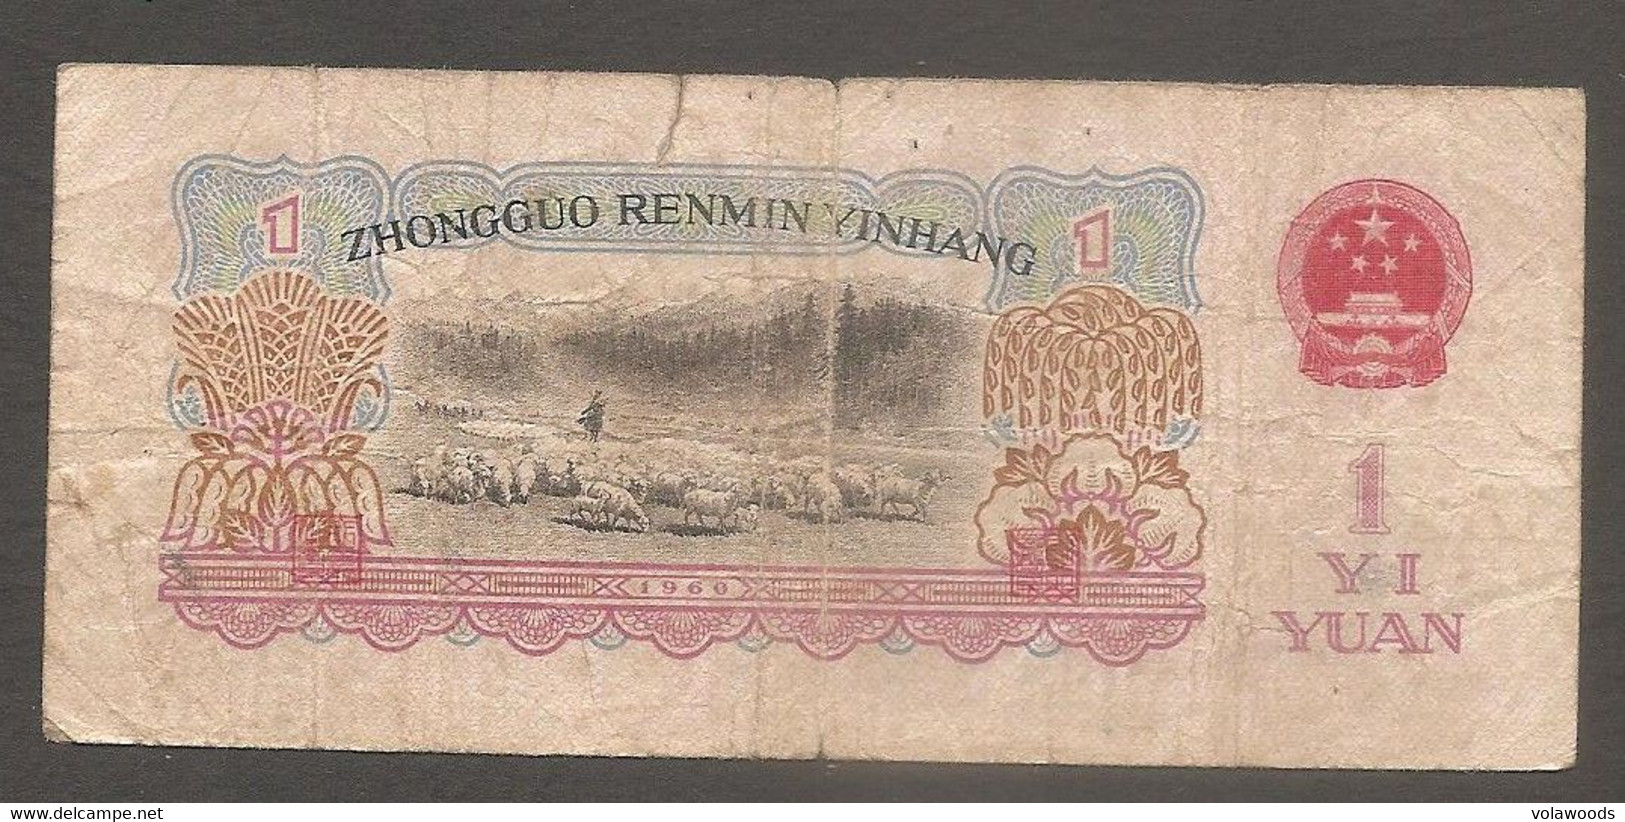 Cina - Banconota Circolata Da 1 Yuan P-874b - 1960 #17 - China